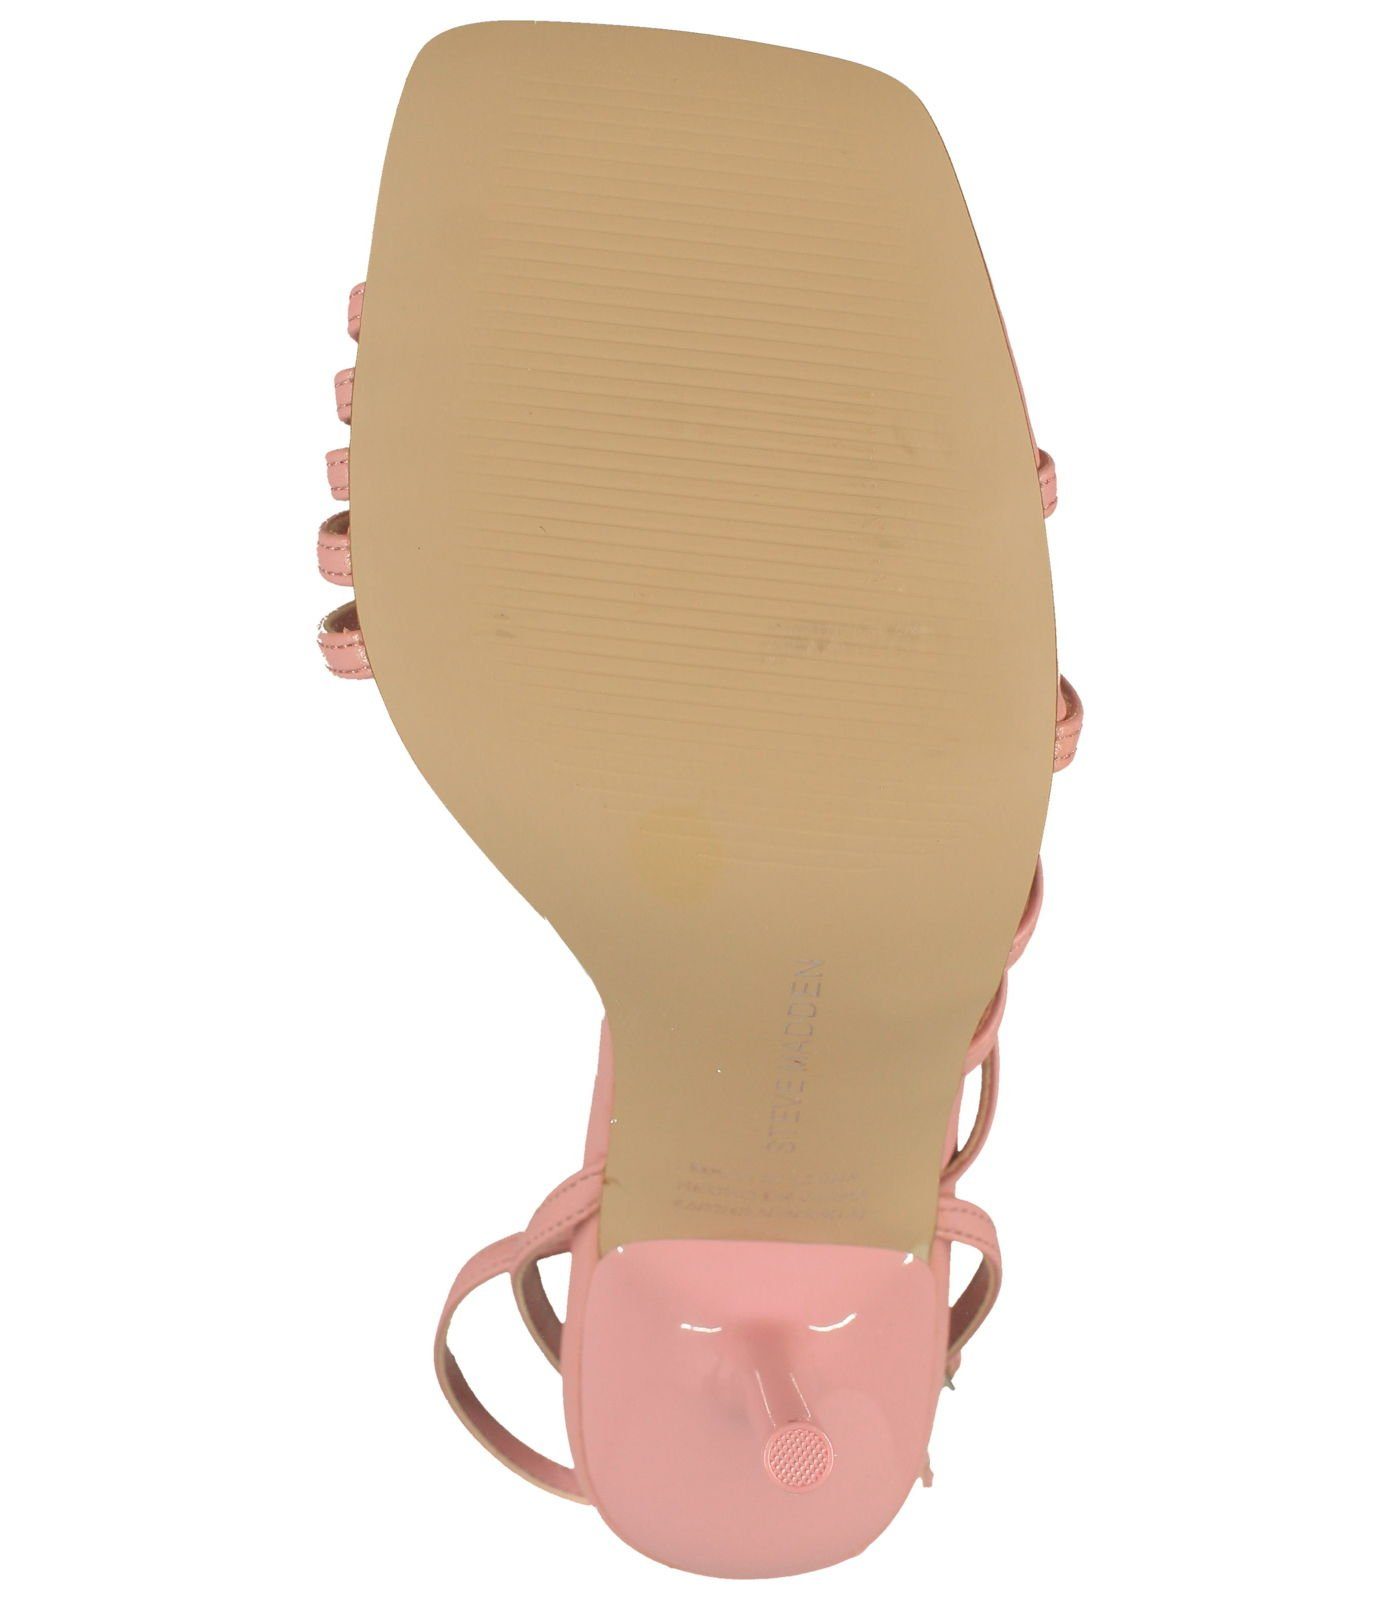 STEVE MADDEN Sandalen Lederimitat High-Heel-Sandalette Pink